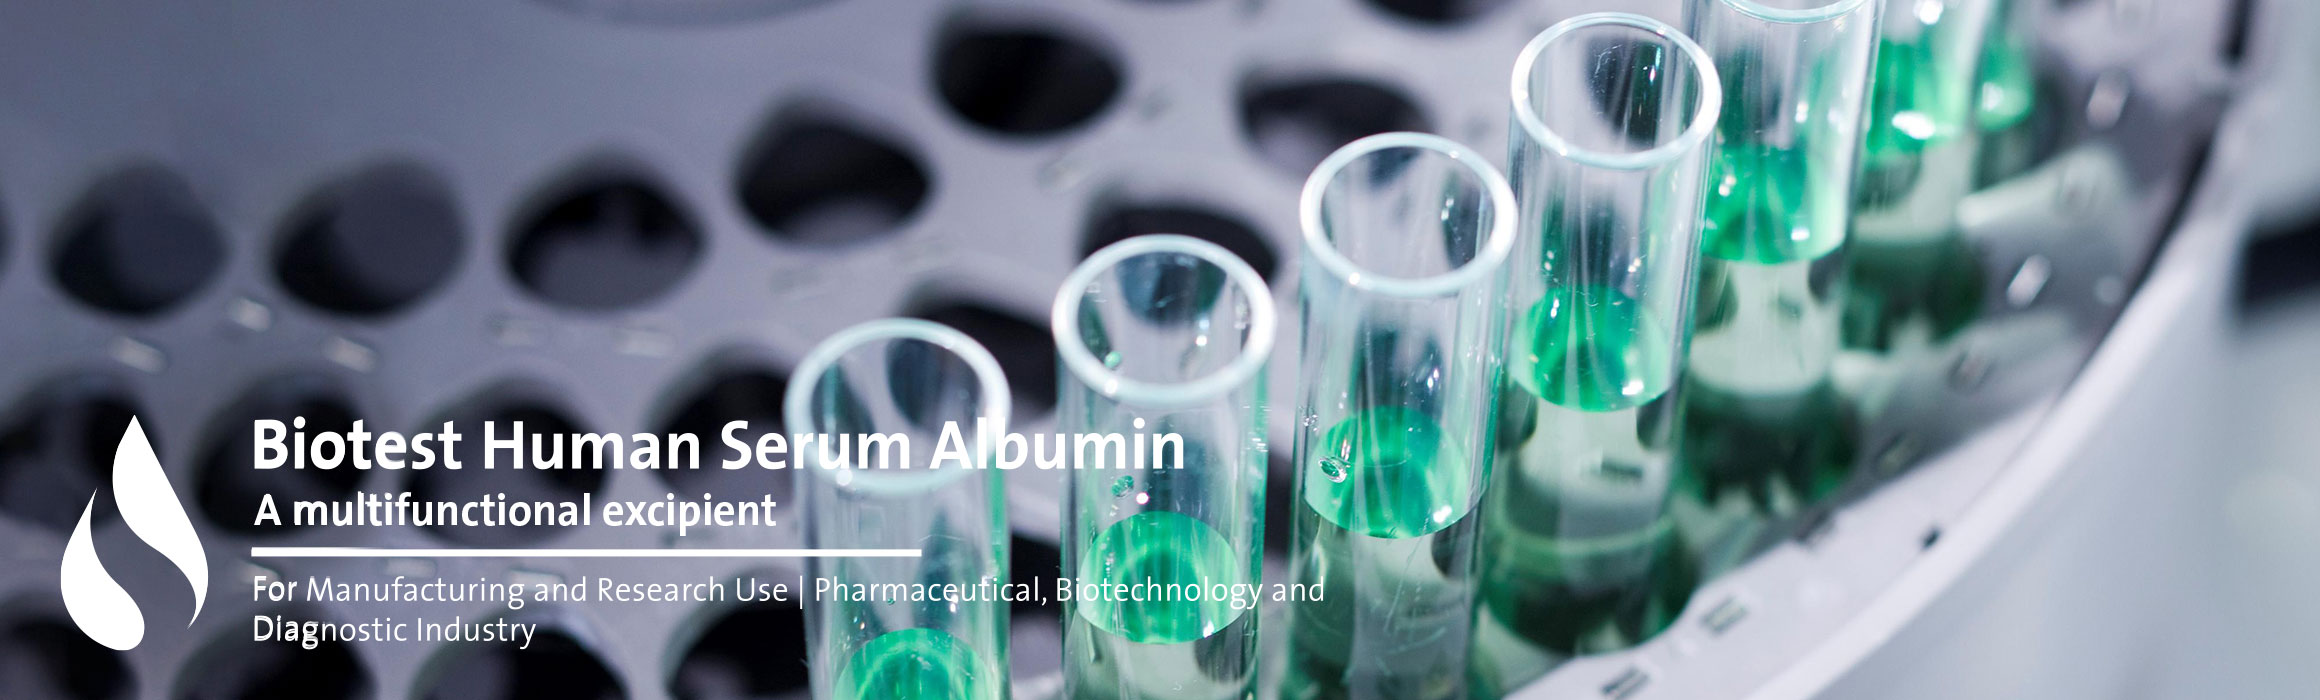 Human Serum Albumin, Excipient, USP/EP - NOVA Biologics, Inc.